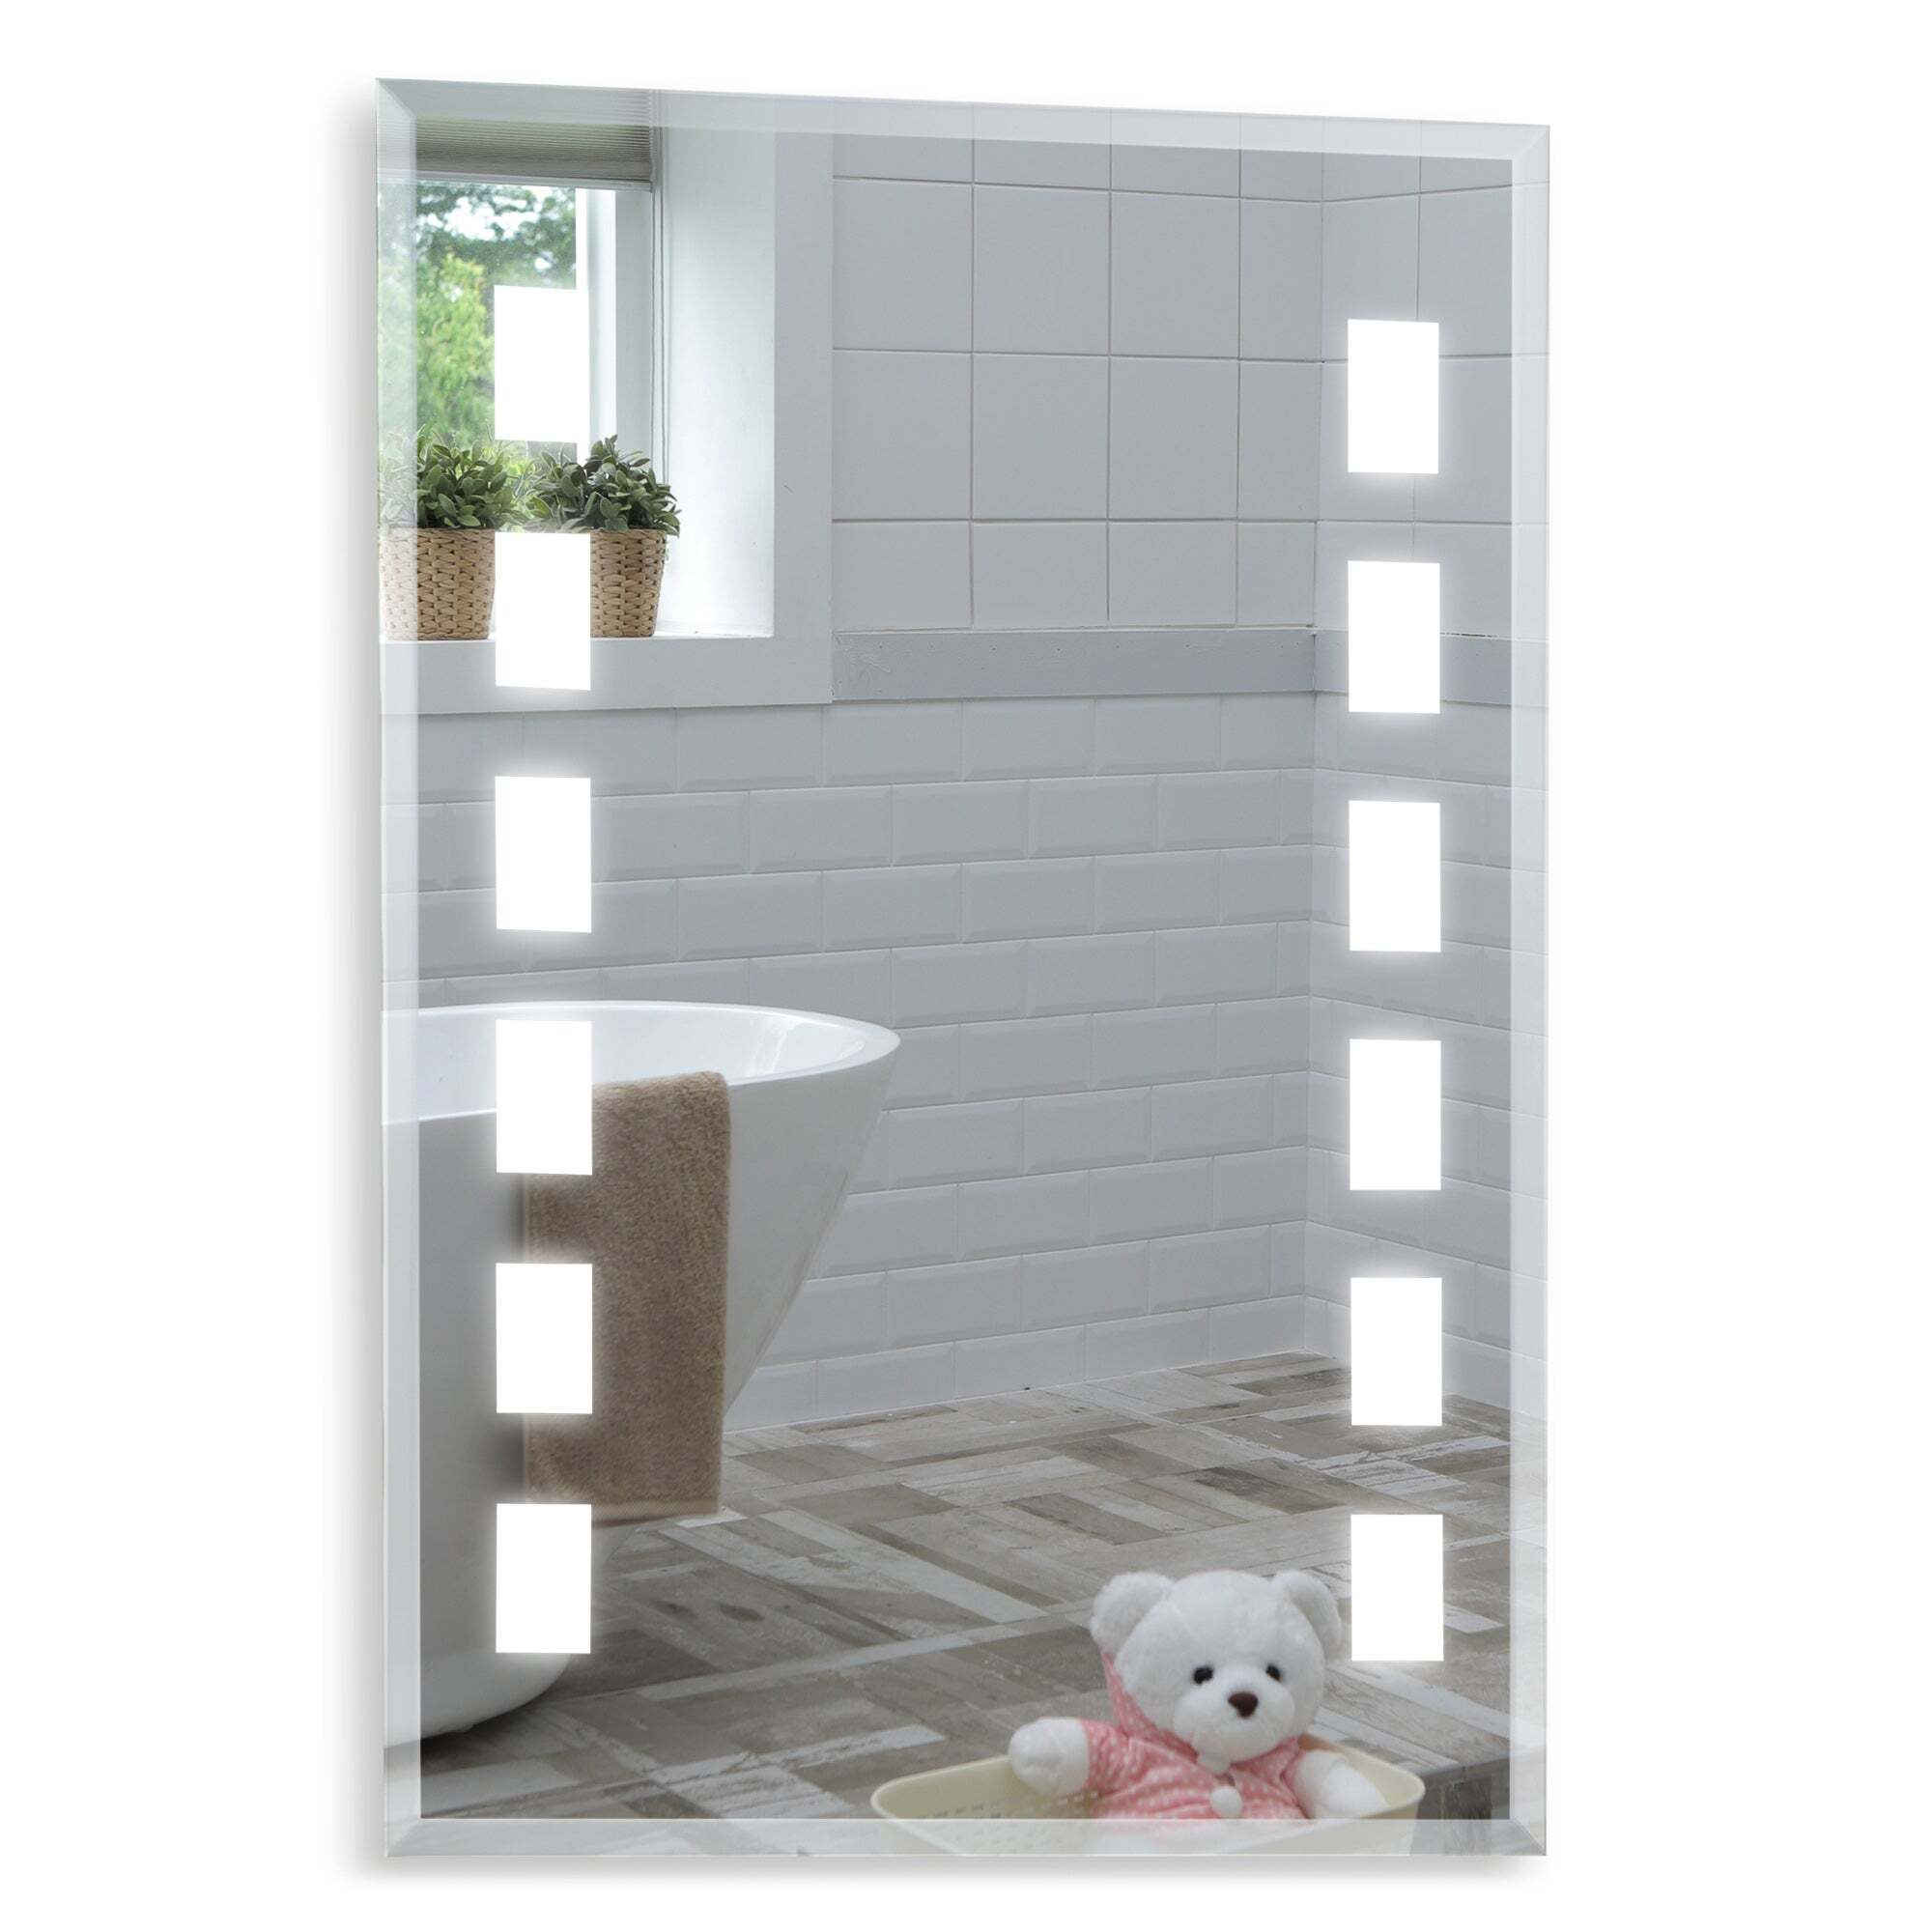 Leo Modern Bathroom Wall Mirror: Size-70Hx50Wcm YJ5308